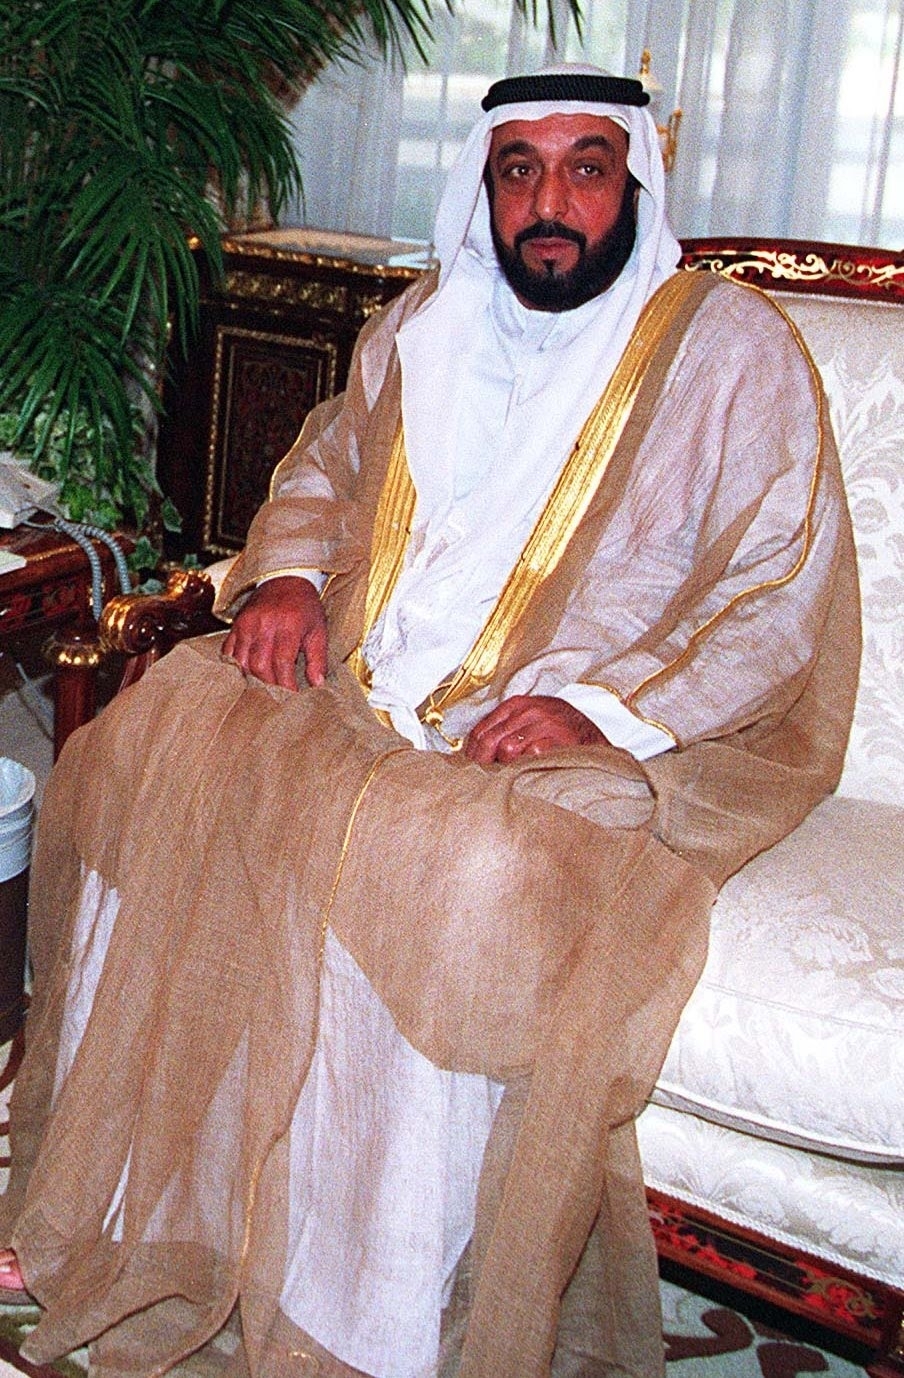 Sheikh Khalifa Bin Zayed Al Nahayan